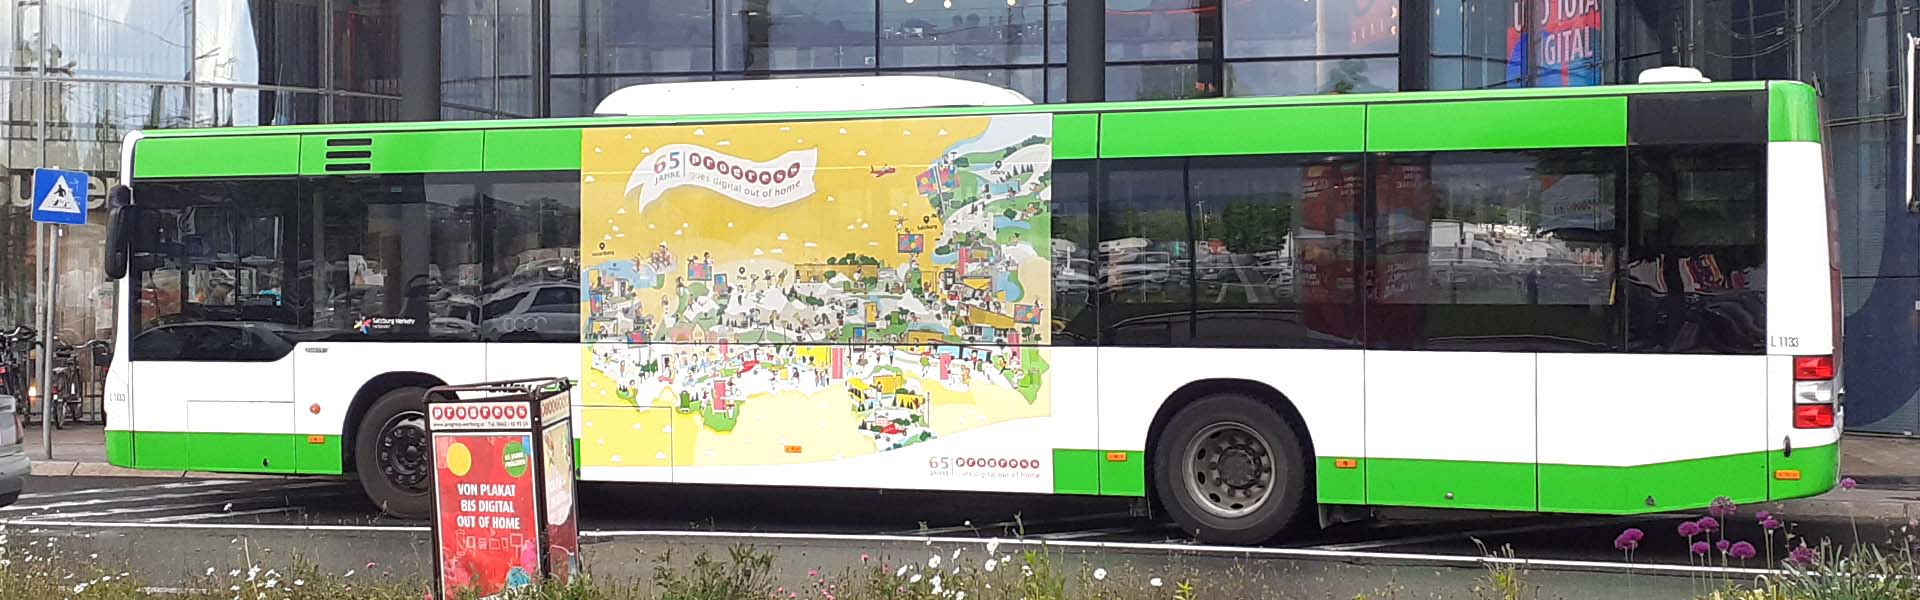 Progress Wimmelbild Bus Werbung von Illustrator Clemens Birsak